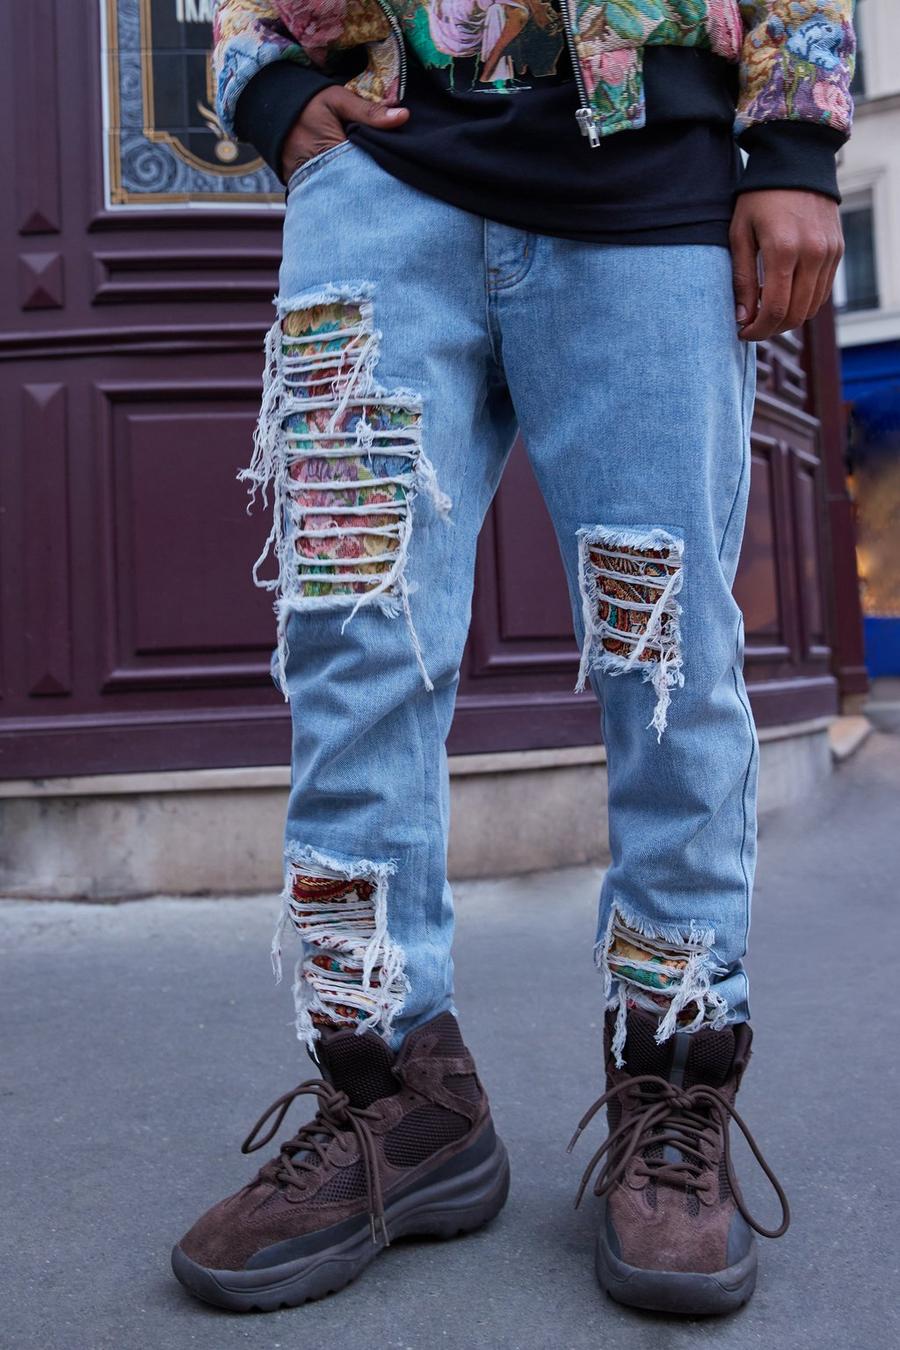 Ice blue ג'ינס בגזרה משוחררת עם קרעים, טלאים ודוגמת גובלן